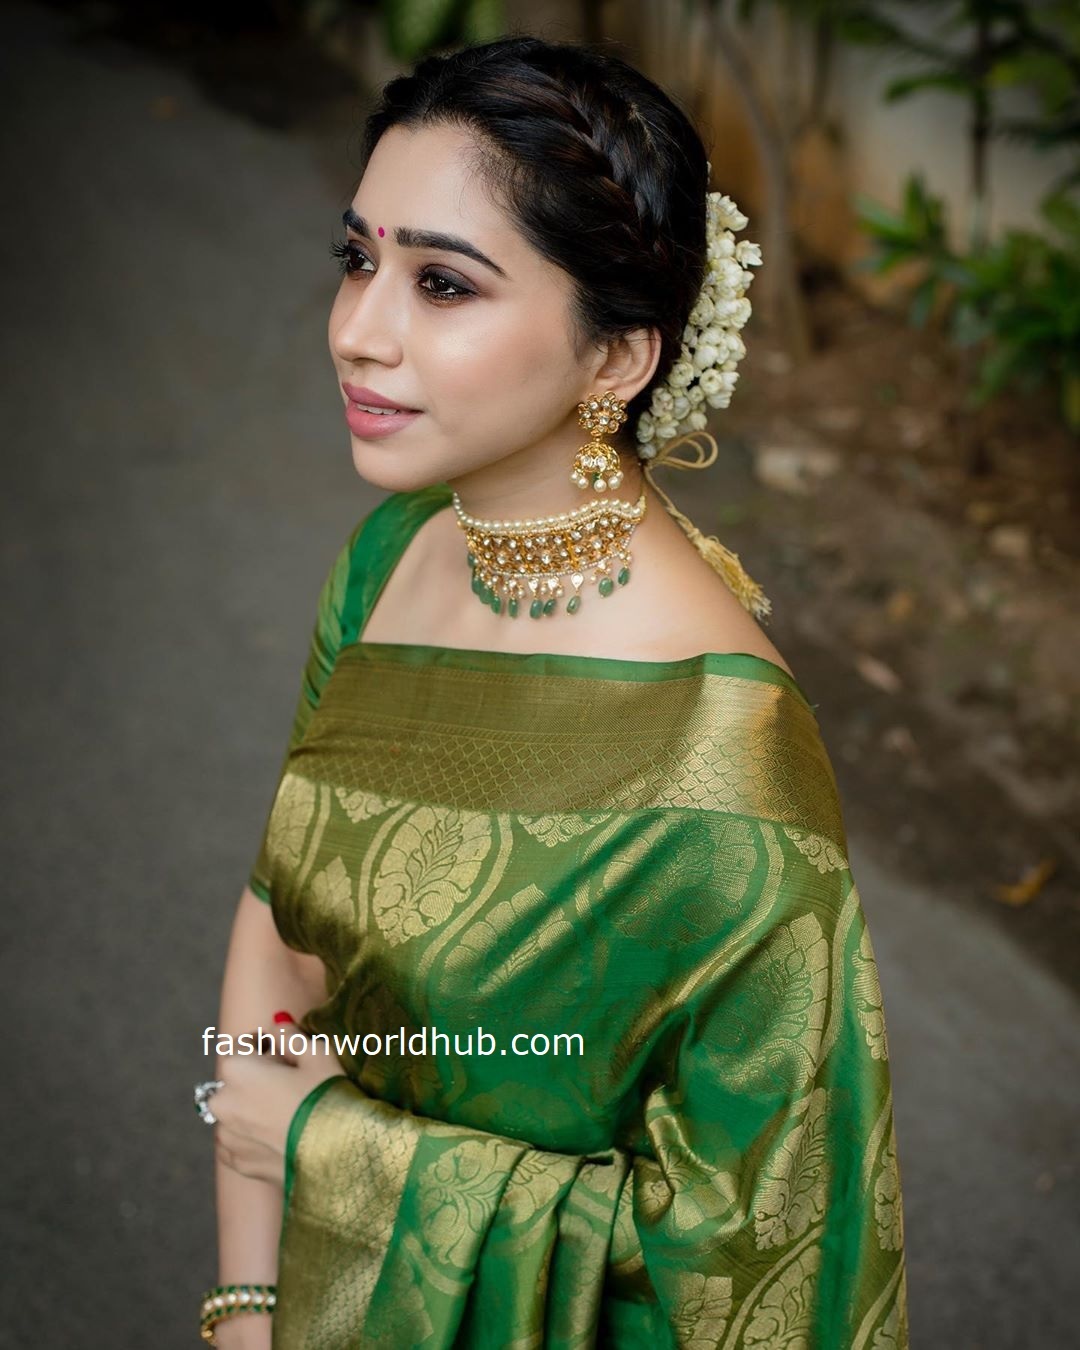 Aarti Ravi in a green Kanjeevaram saree! | Fashionworldhub